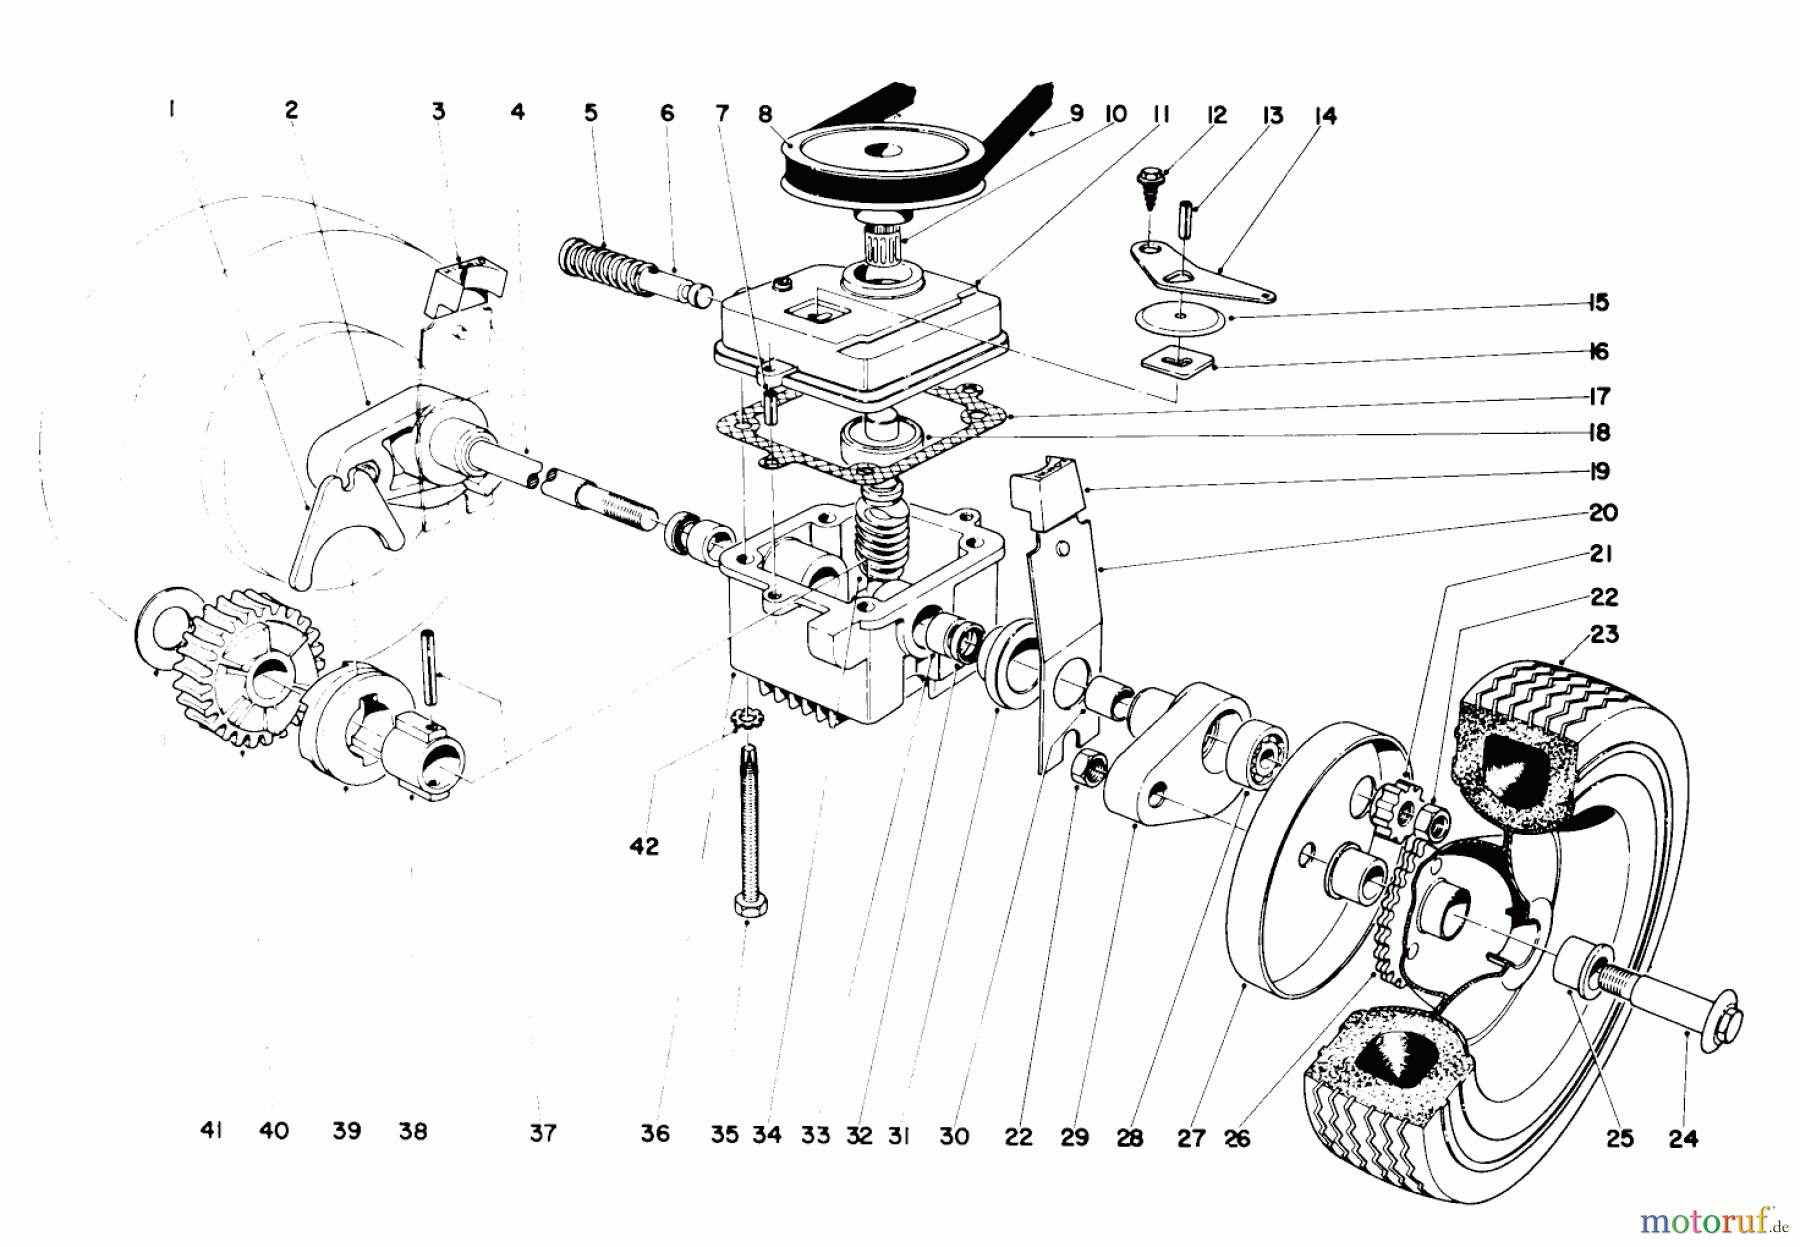  Toro Neu Mowers, Walk-Behind Seite 1 19500 - Toro Whirlwind Lawnmower, 1971 (1000001-1999999) 21